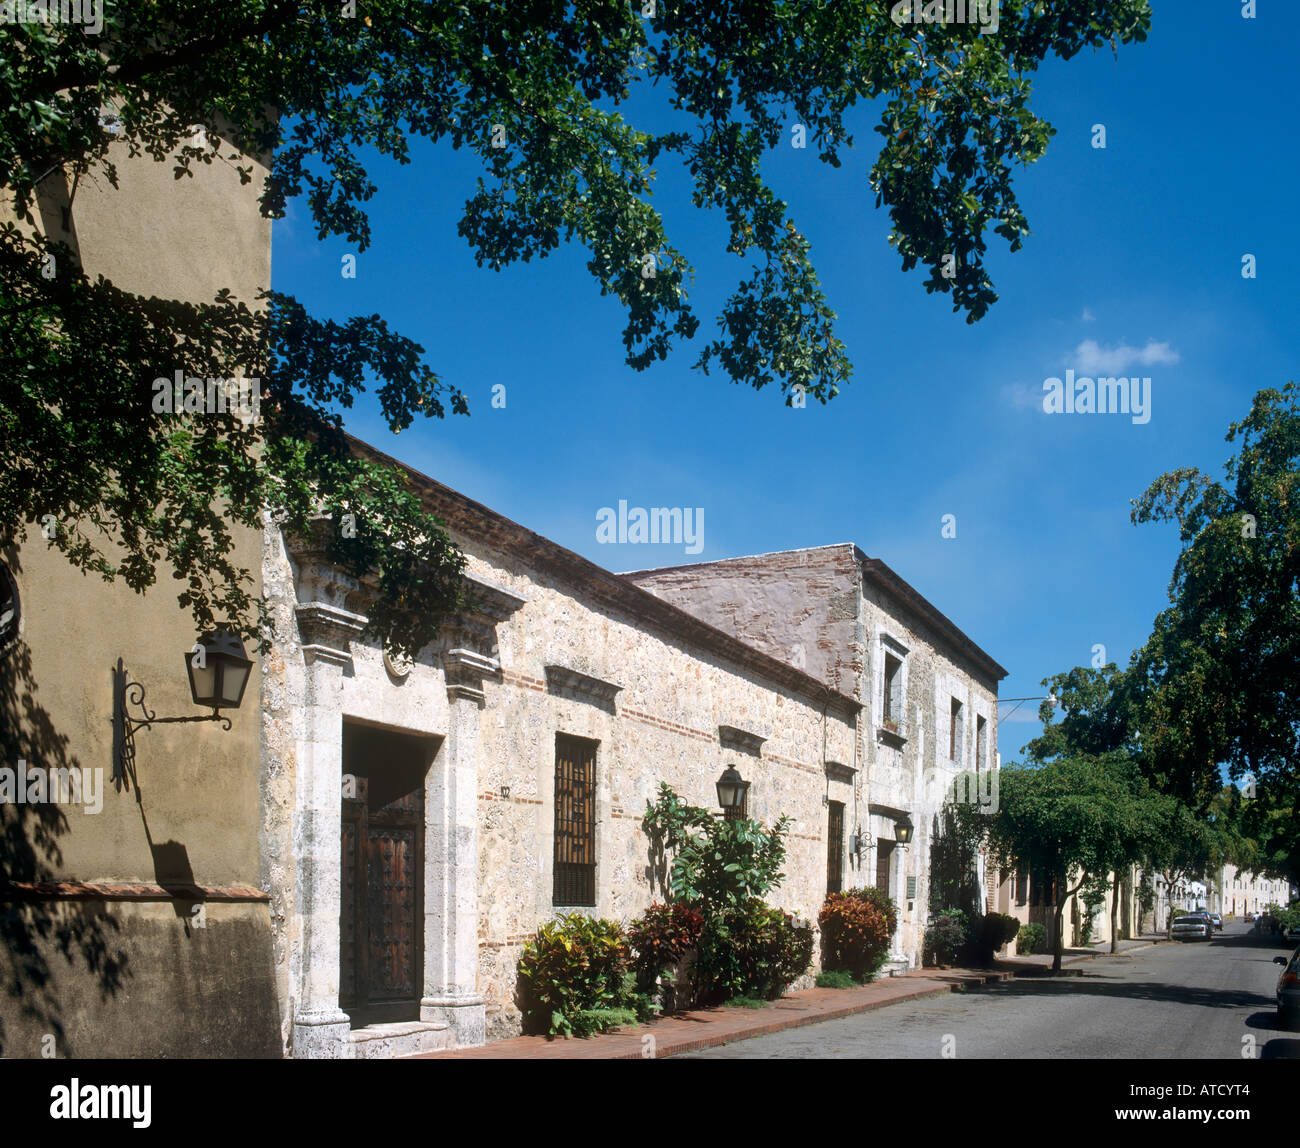 La rue historique de la Calle de las Damas dans la ville coloniale, Santo Domingo, République dominicaine, Caraïbes Banque D'Images